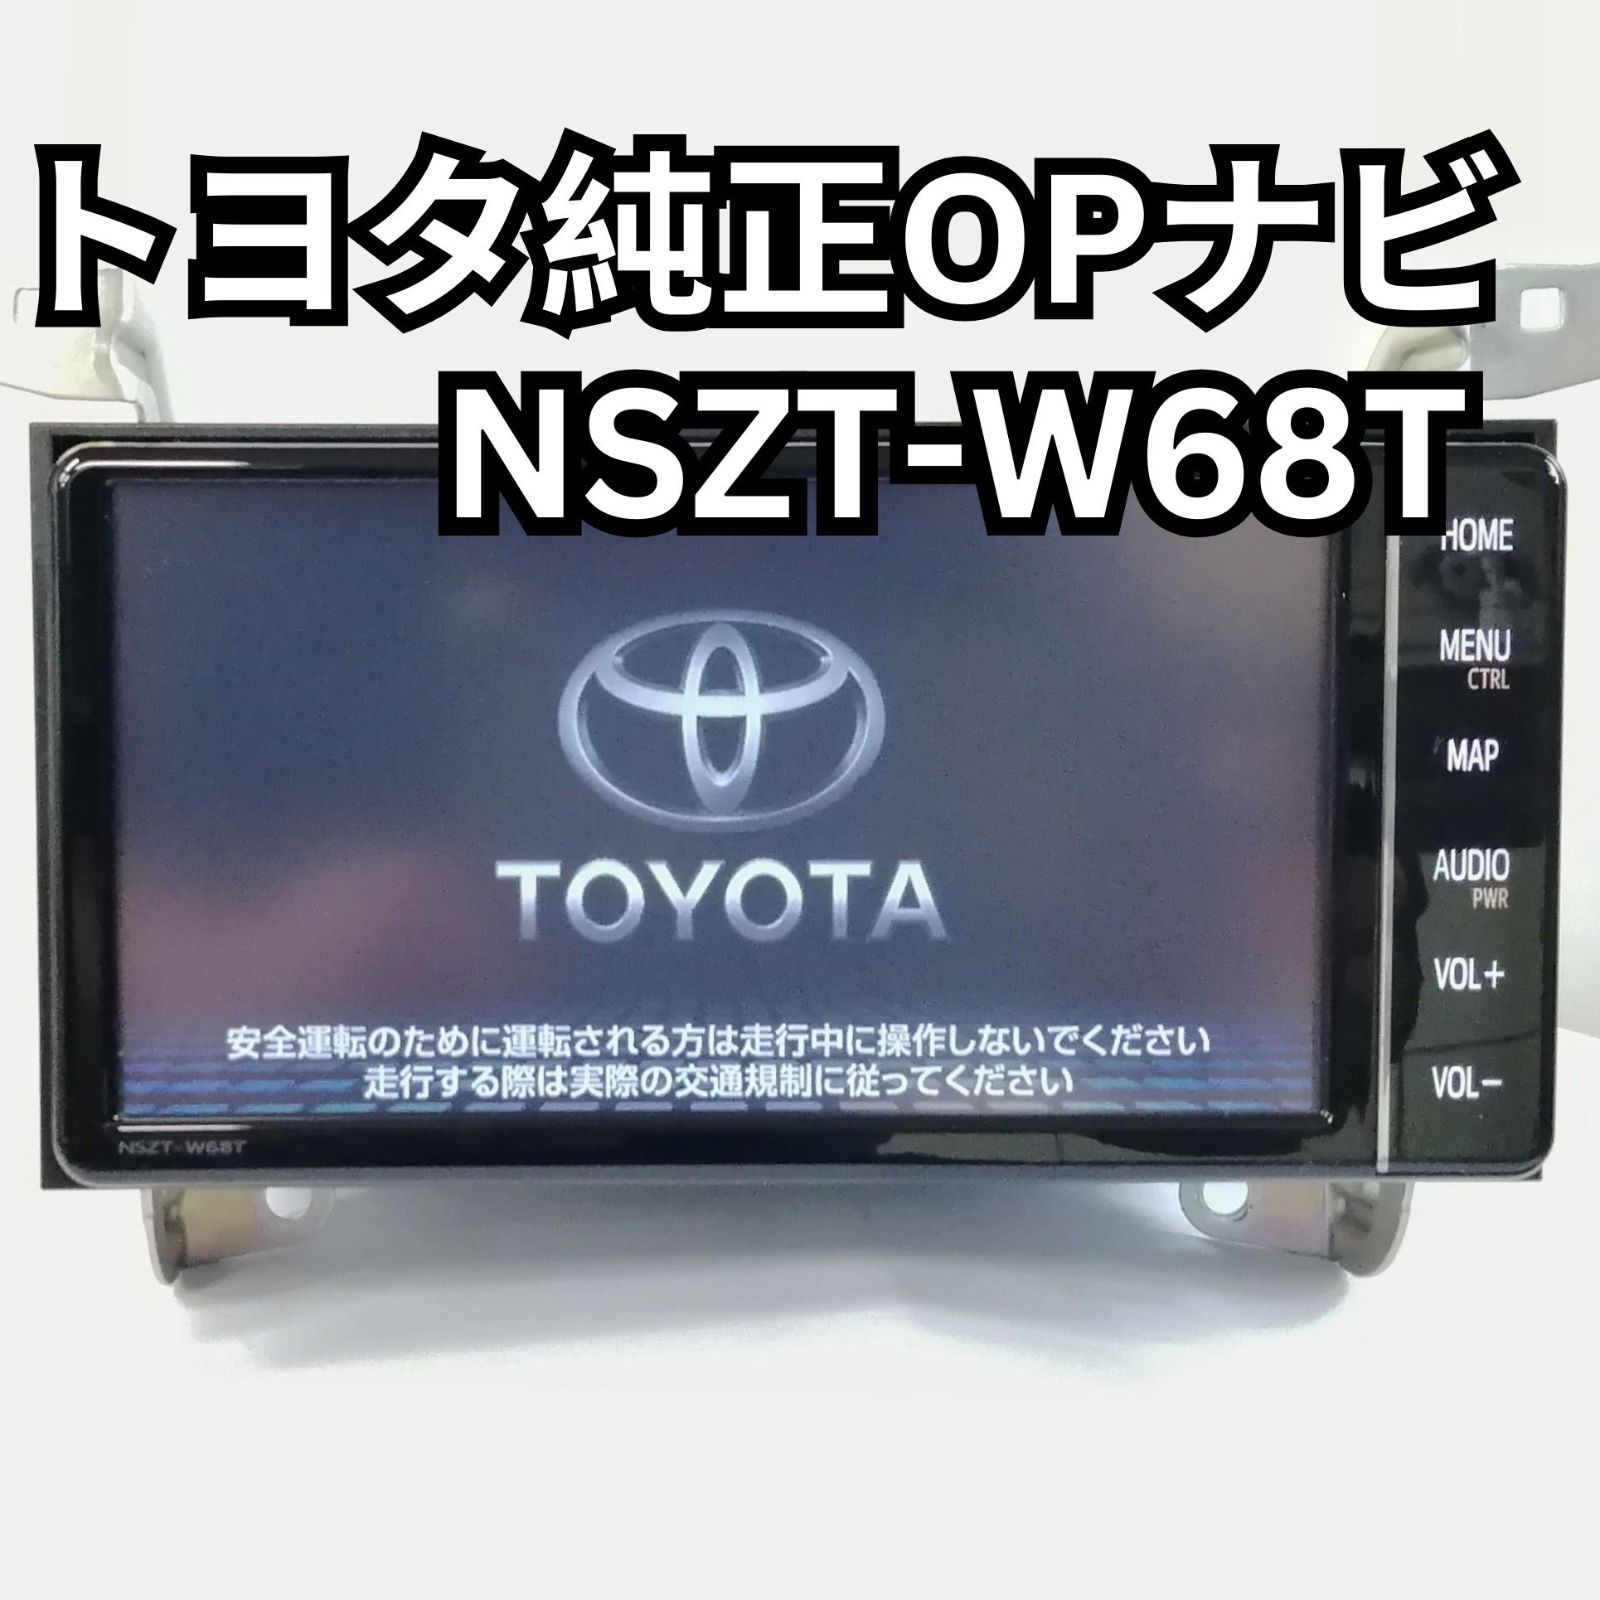 トヨタ純正OPナビ 7インチ NSZT-W68T 難有(セキュリティロックされています) ジャンク品 - メルカリ